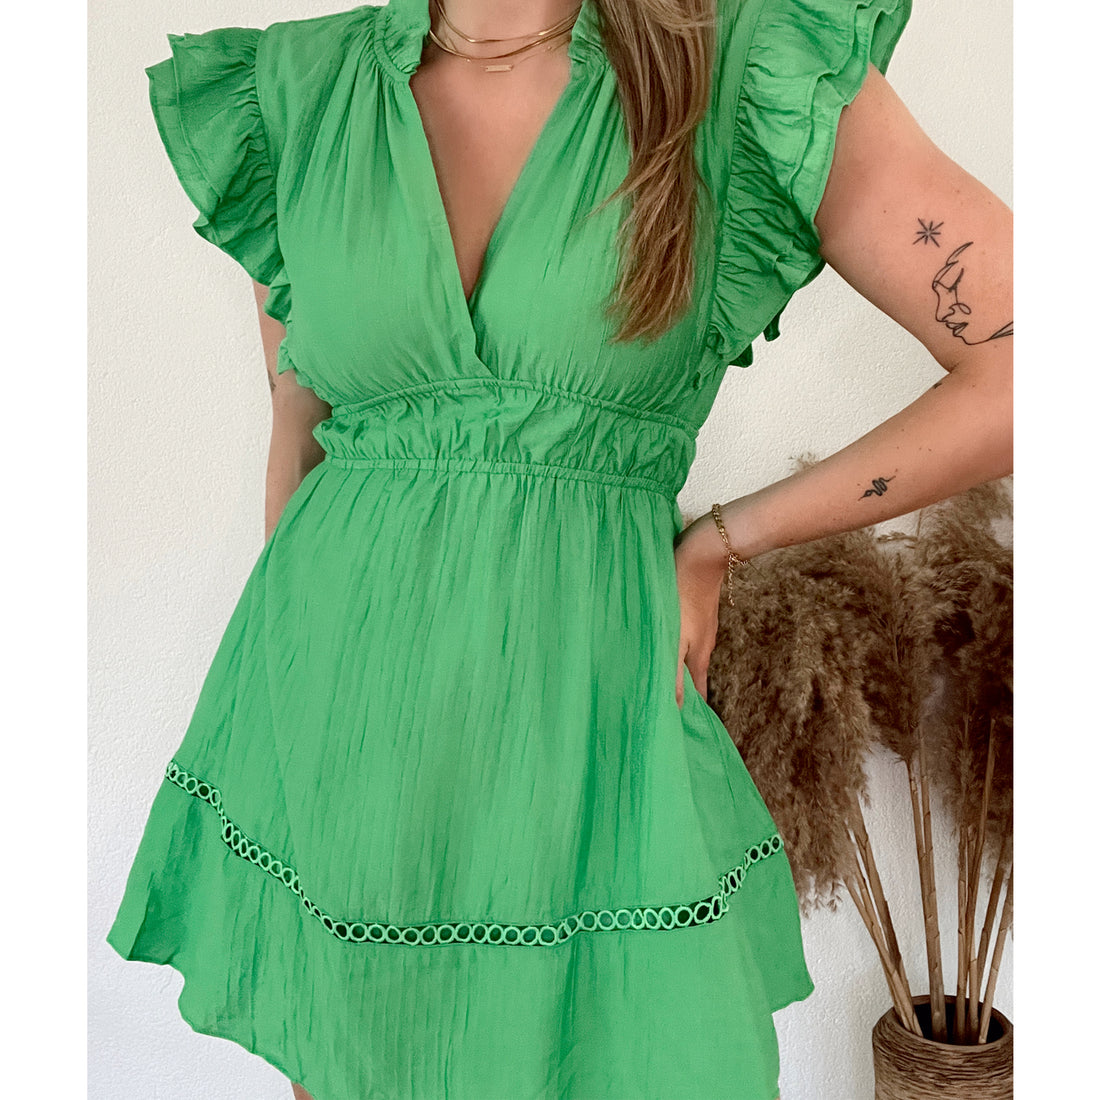 Groene katoenen jurk met ruffle mouwen en geborduurd detail aan de onderkant. De jurk heeft een elastiek in de taille waardoor het jurkje mooi valt. De jurk is van 100% katoen en valt normaal op maat. Groene katoenen jurk zonder mouwen met ruffle en broderie detail.